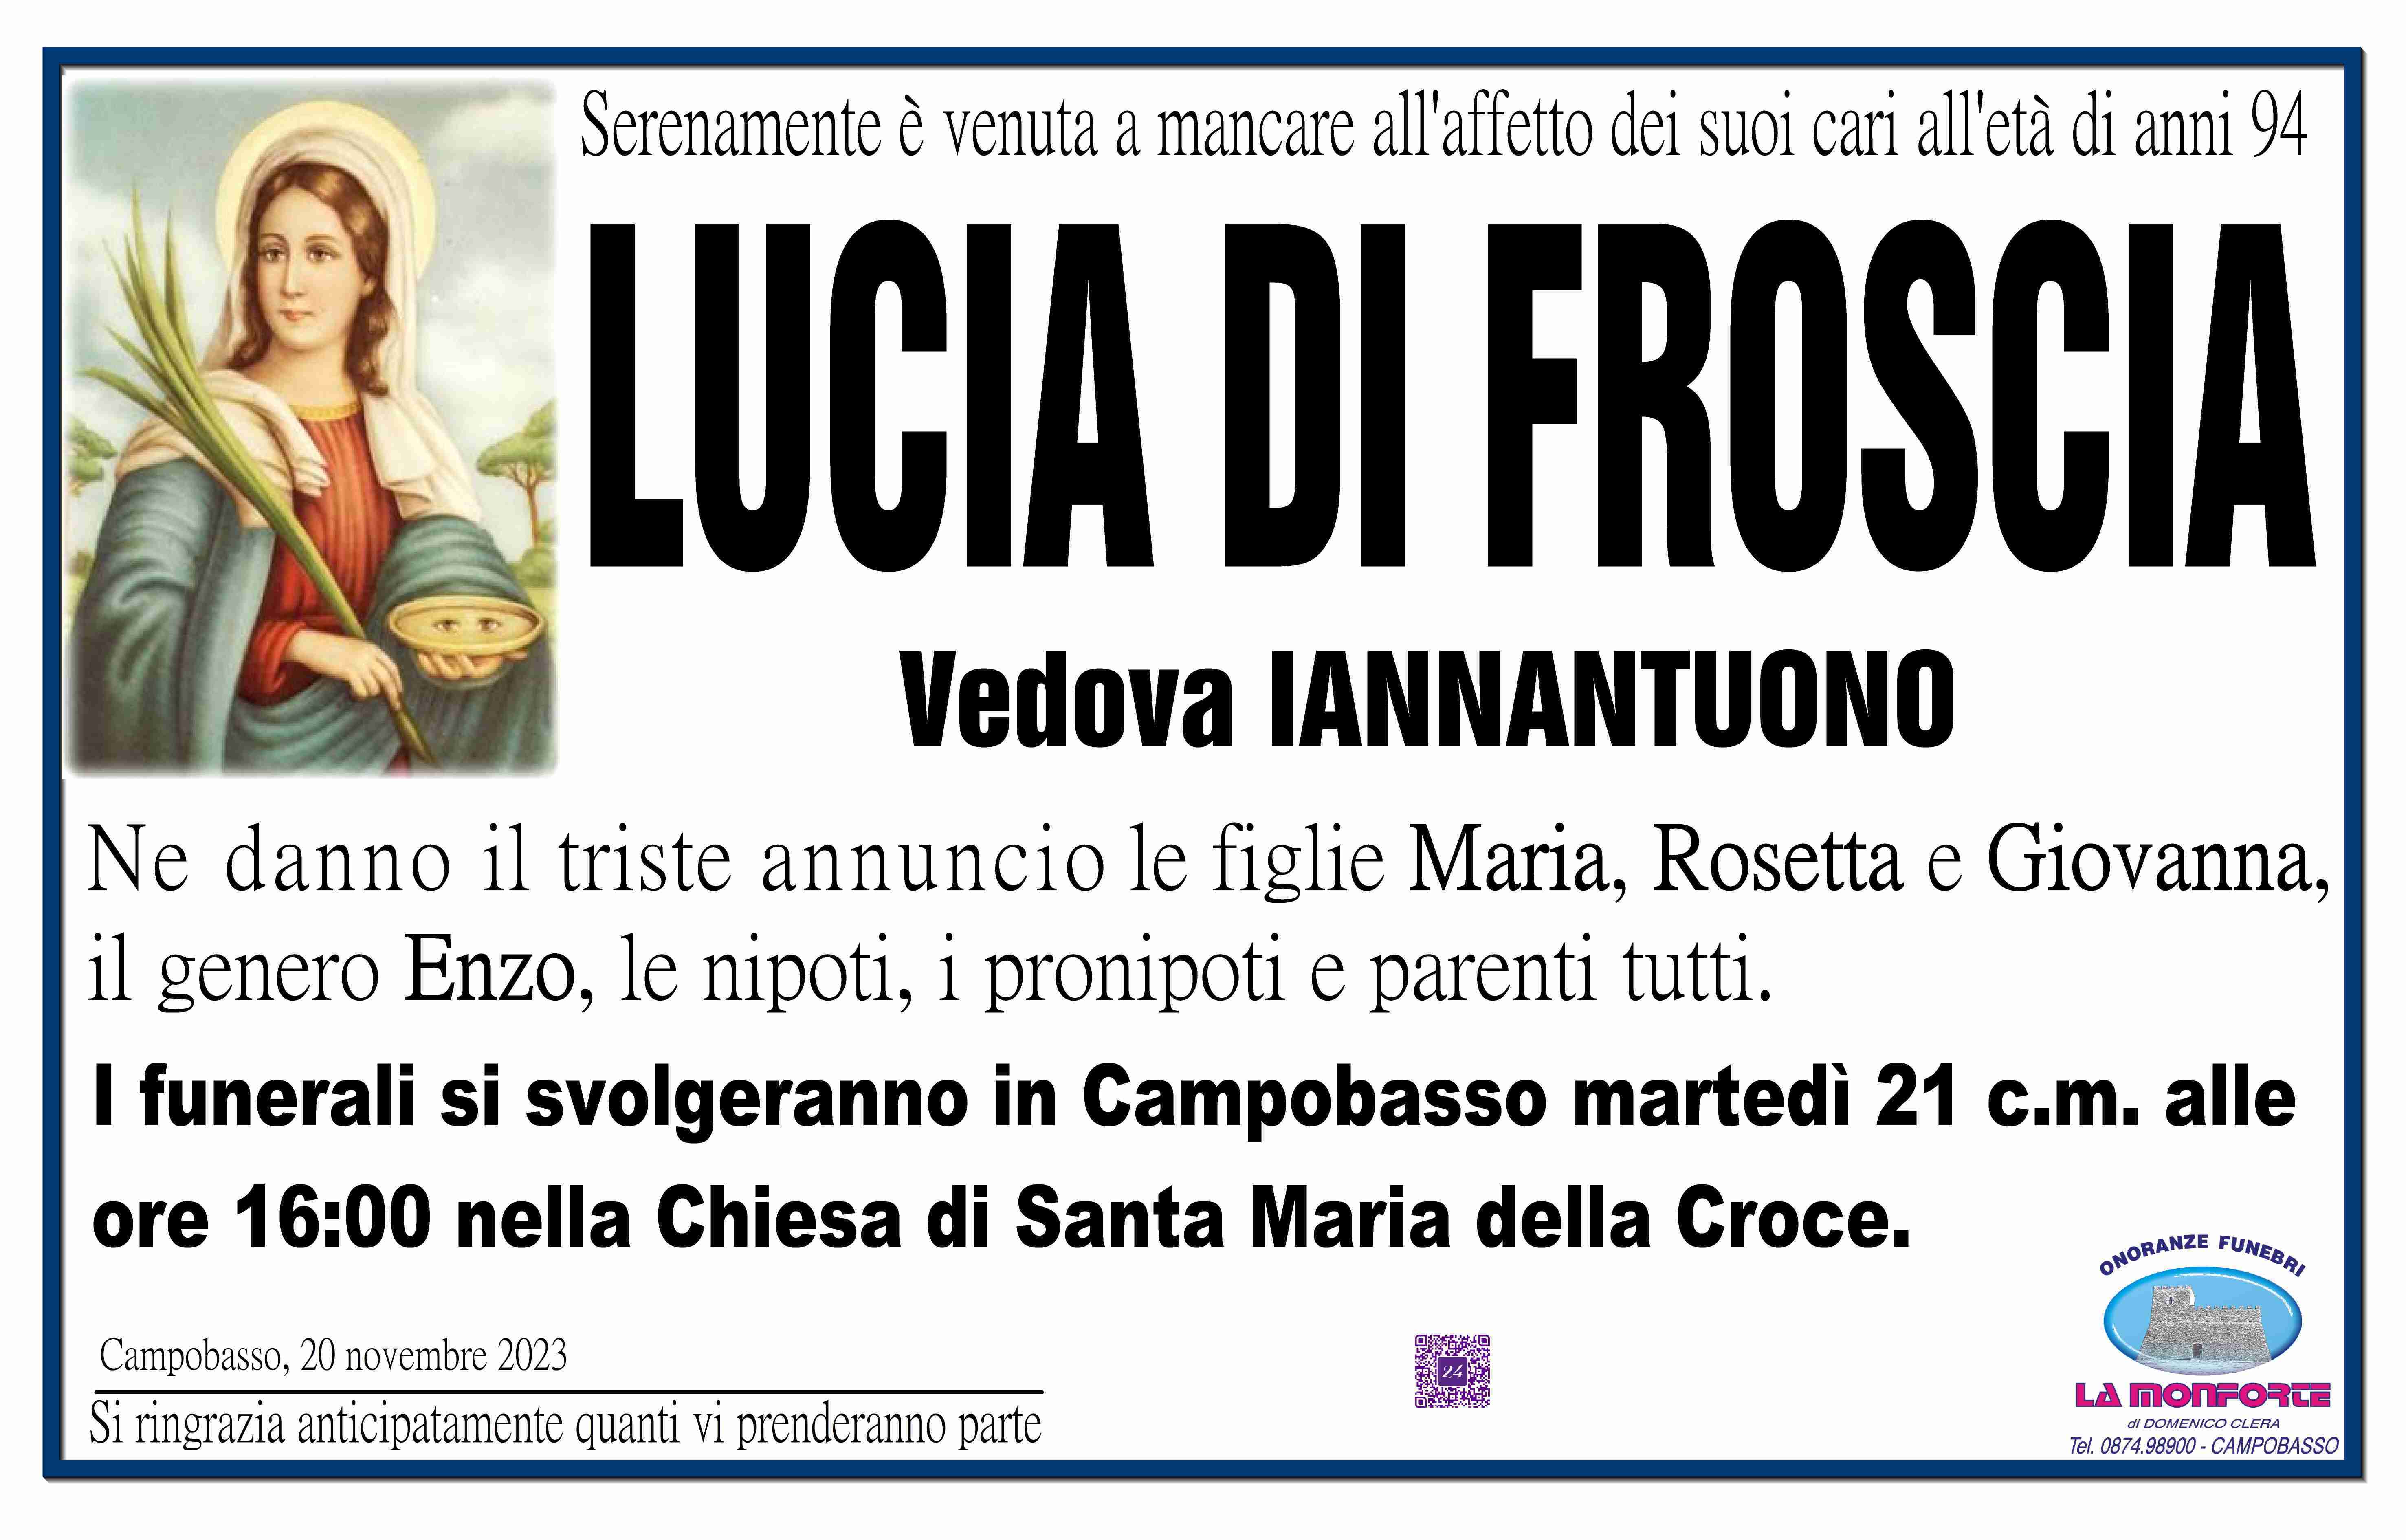 Lucia Di Froscia